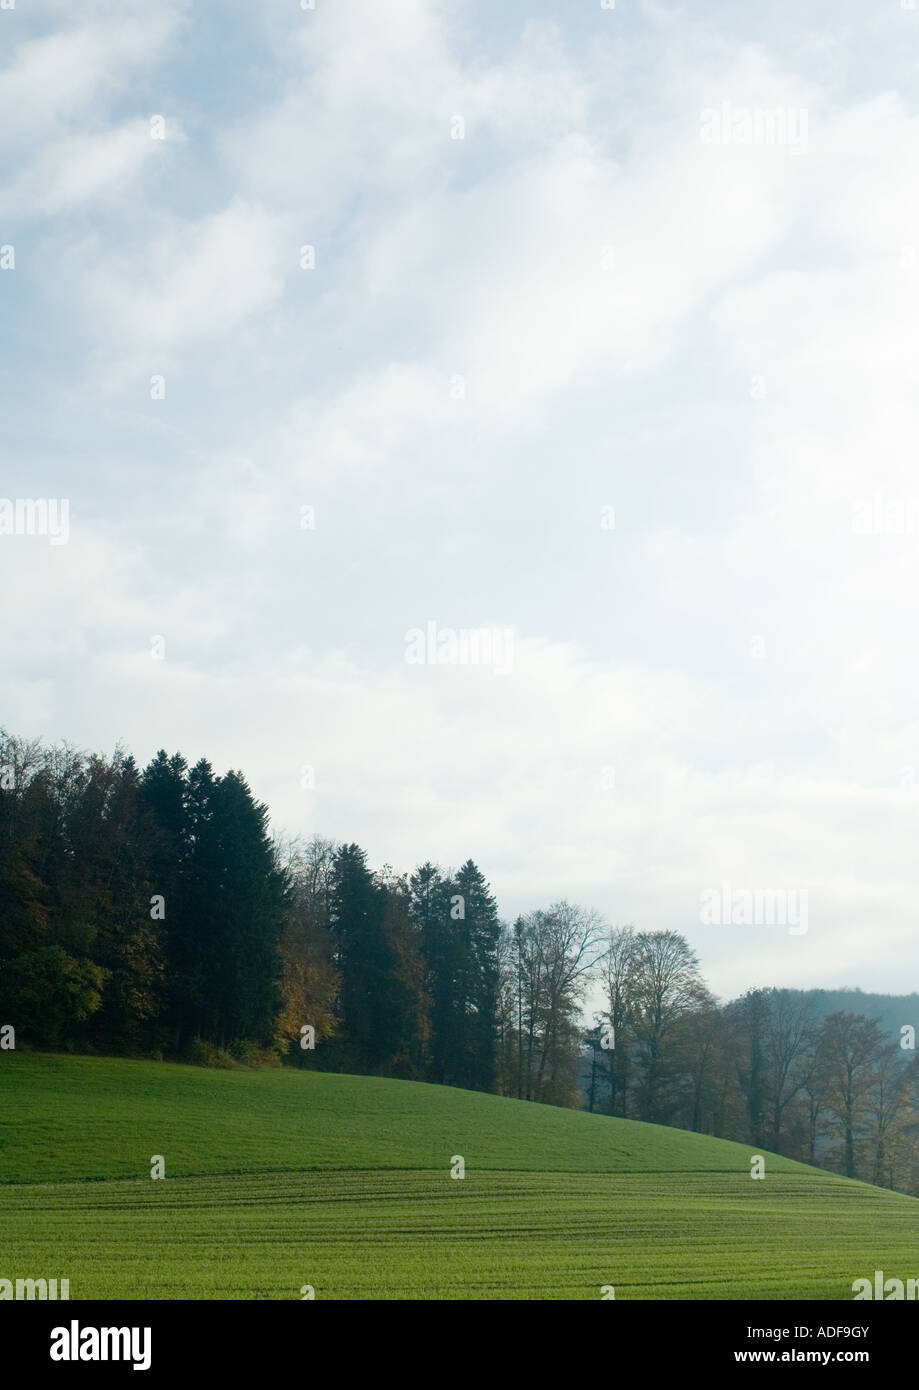 La Suisse, paysage avec des arbres et du ciel Banque D'Images